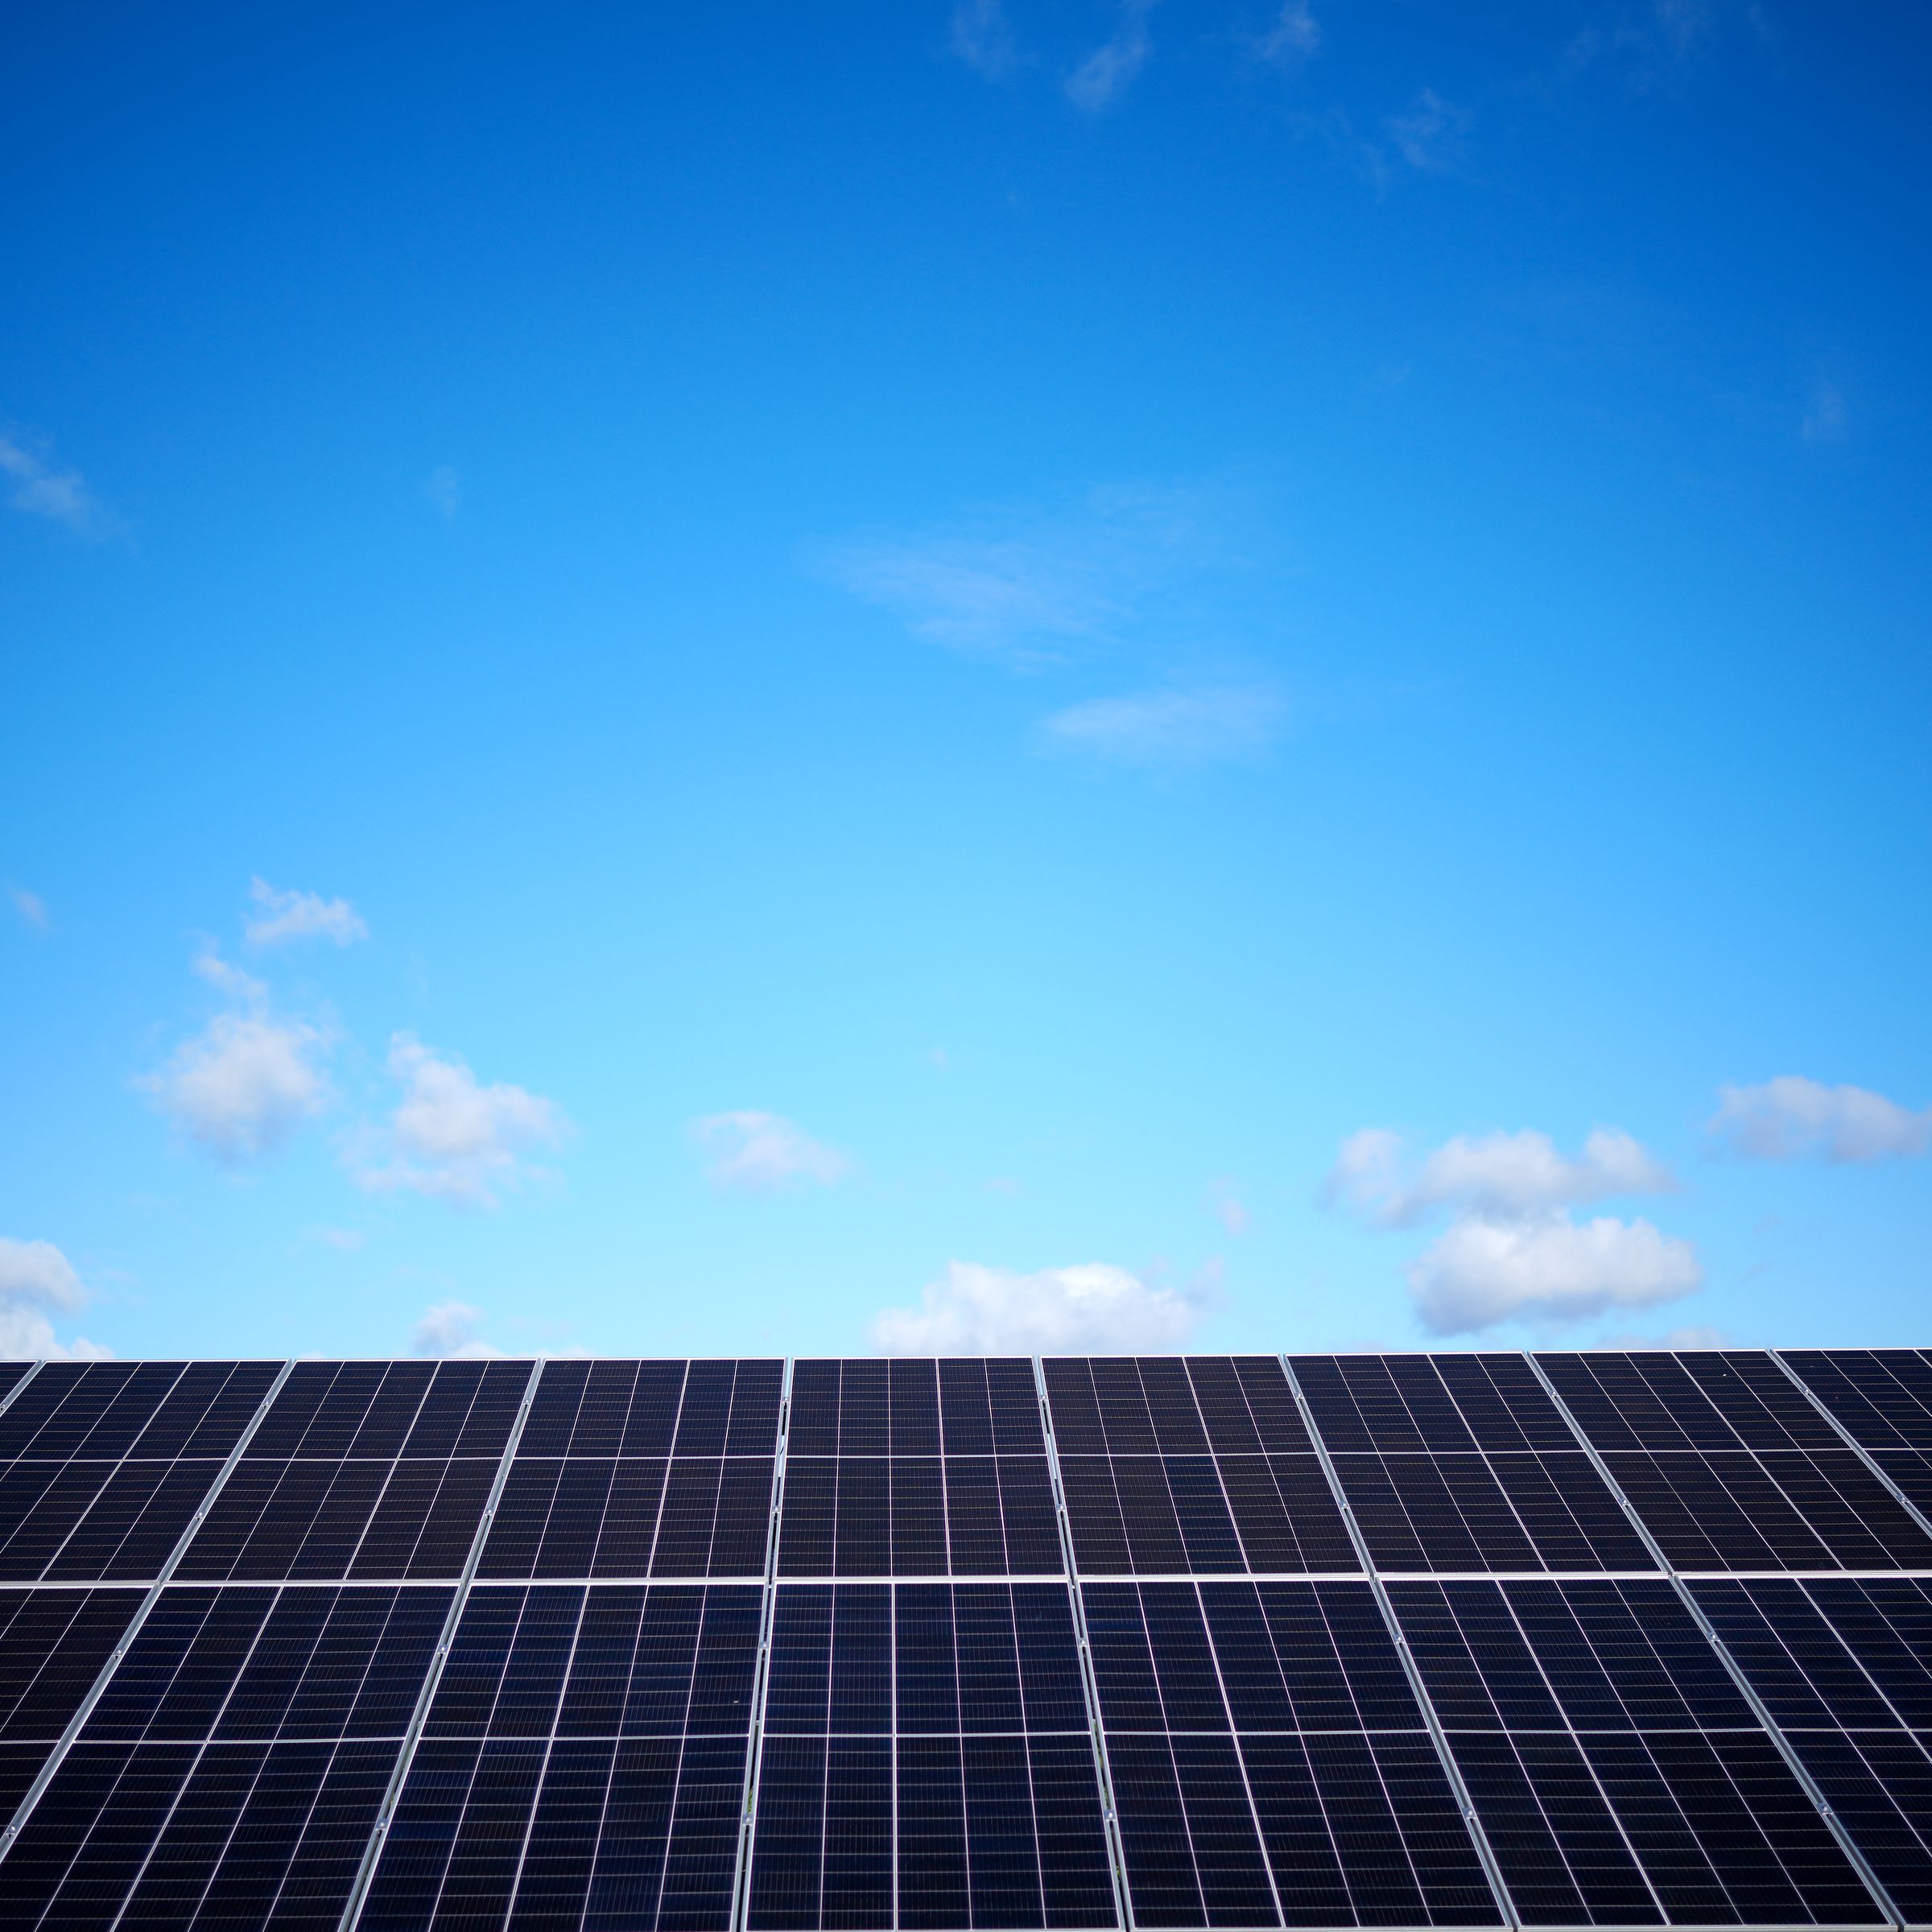 A row of solar panels below a blue sky.